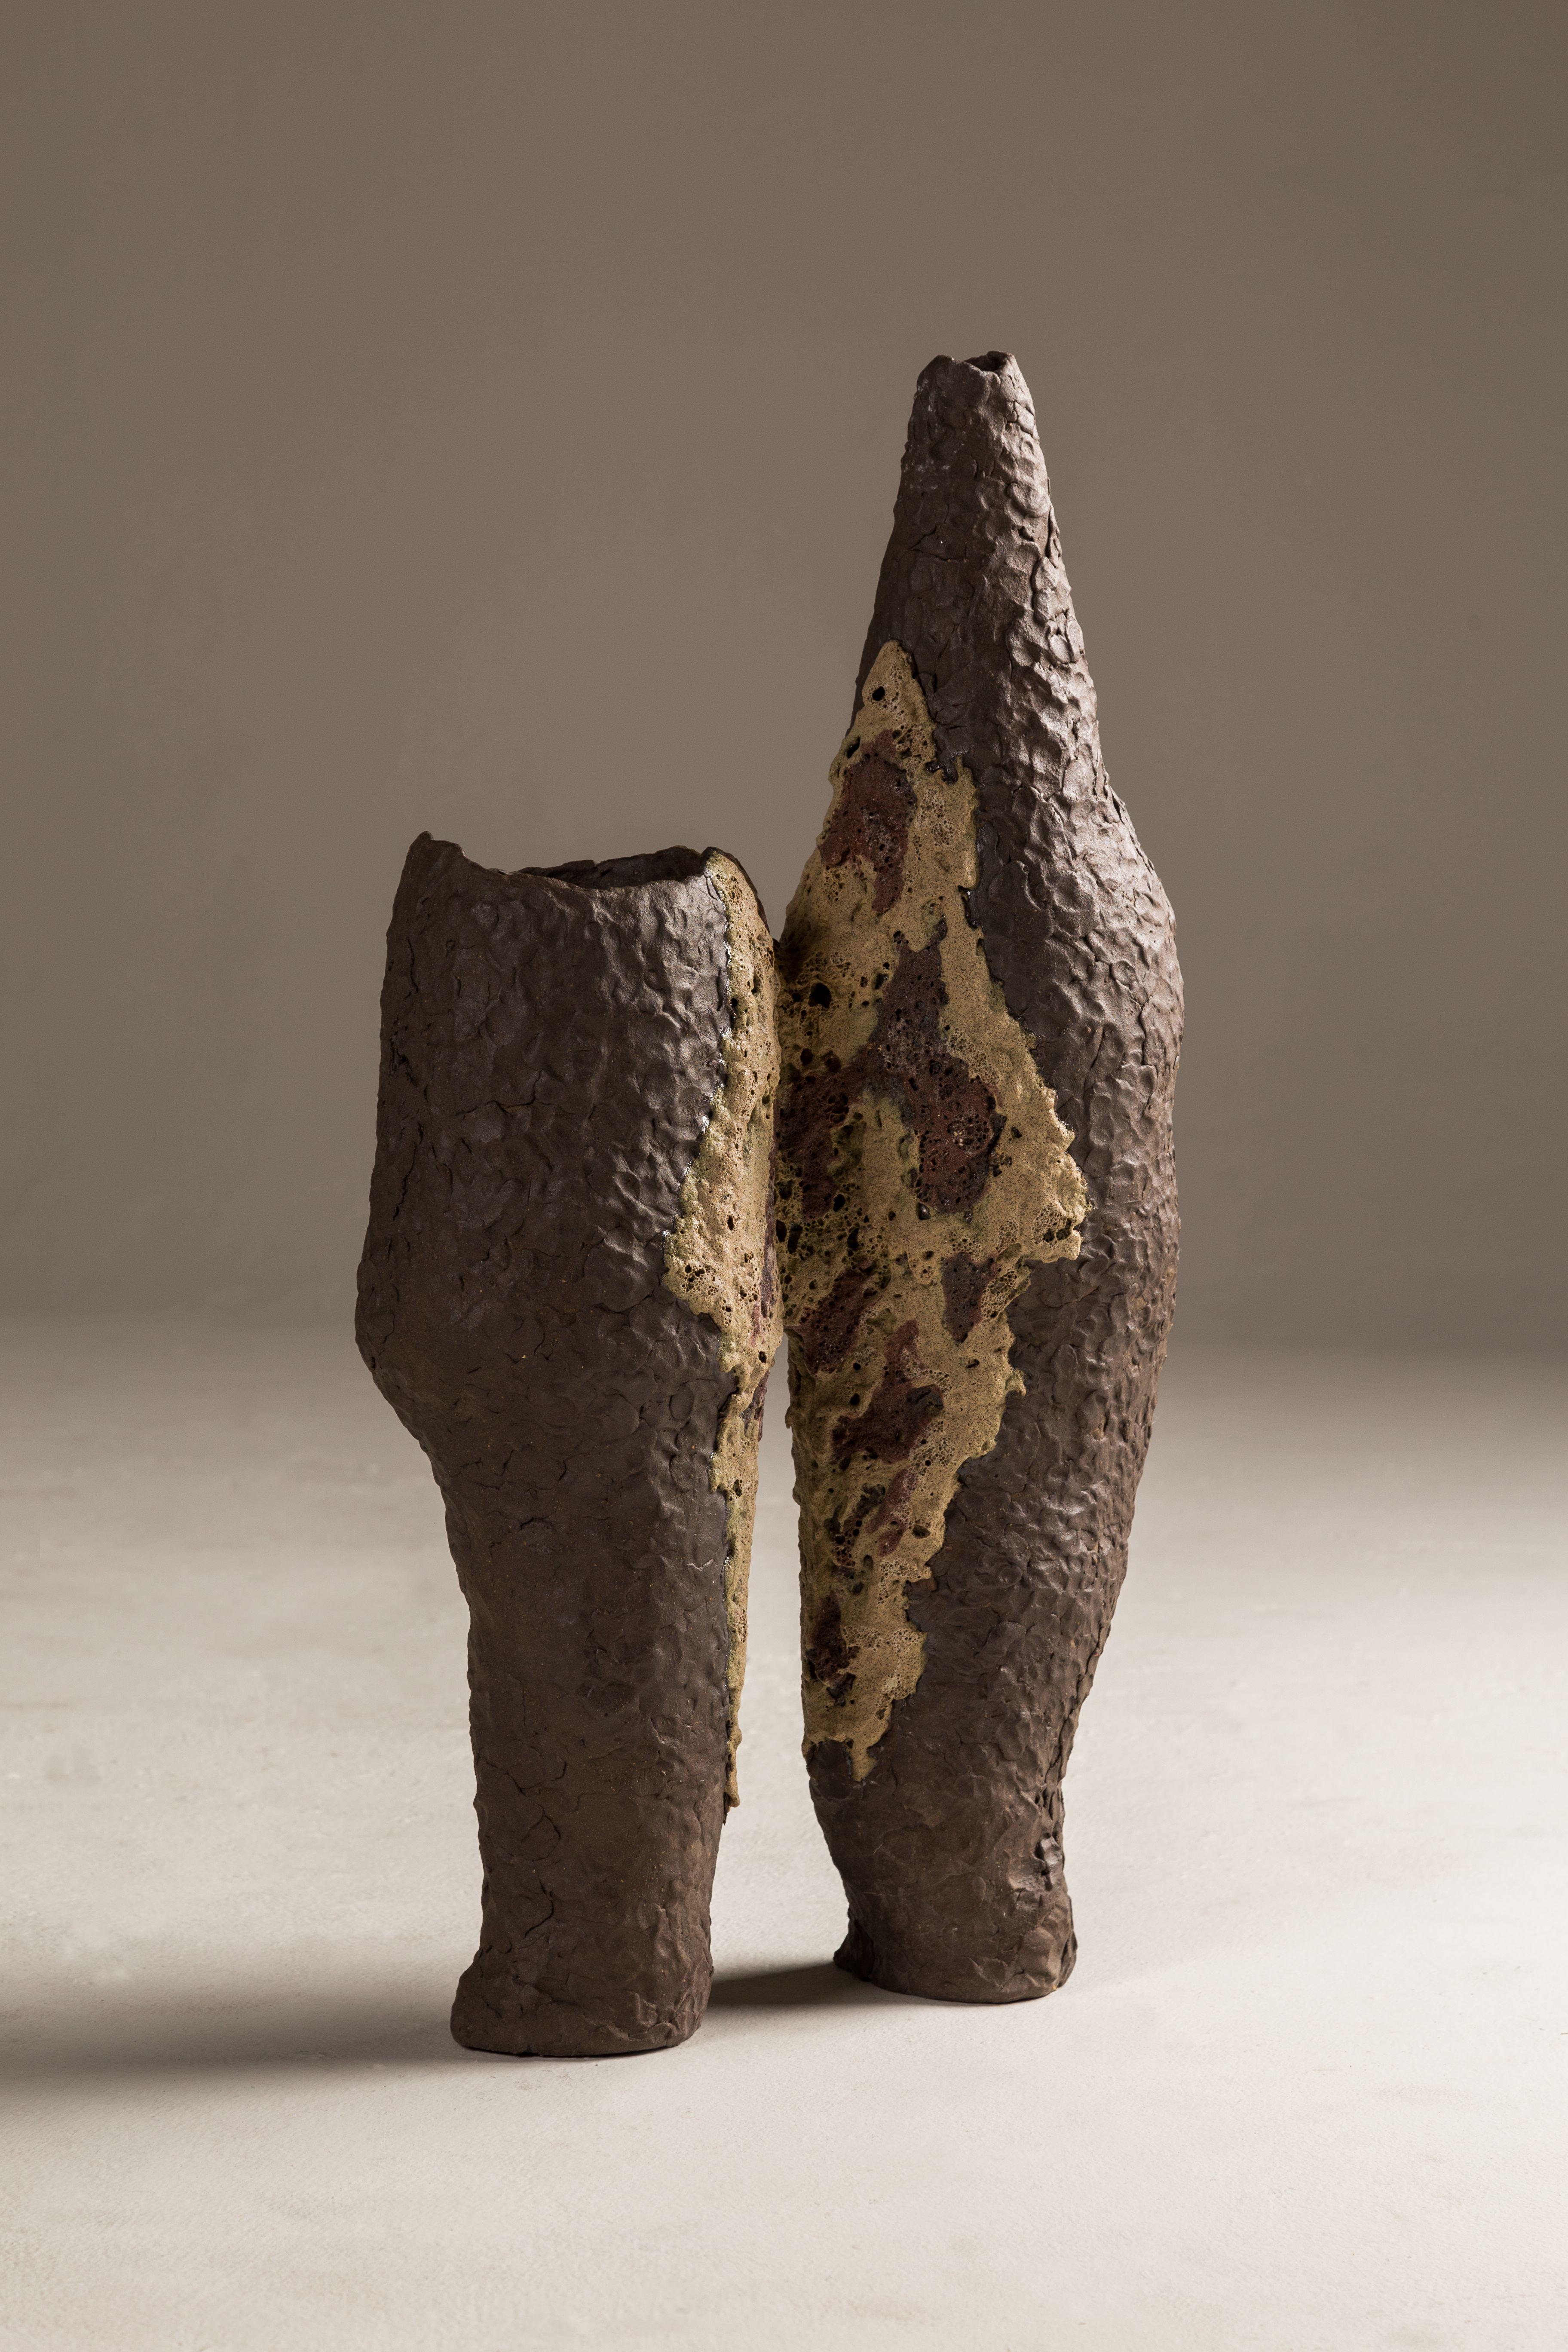 Hermanos-Vase L von Cristián Mohaded 
Einzigartig 
Abmessungen: T 15 x B 31 x H 35 cm
MATERIAL: handgefertigtes Steingut mit unterschiedlichen Oberflächenbehandlungen
Abmessungen und Gewicht sind ungefähre Werte.
 
Die eisernen Bande der